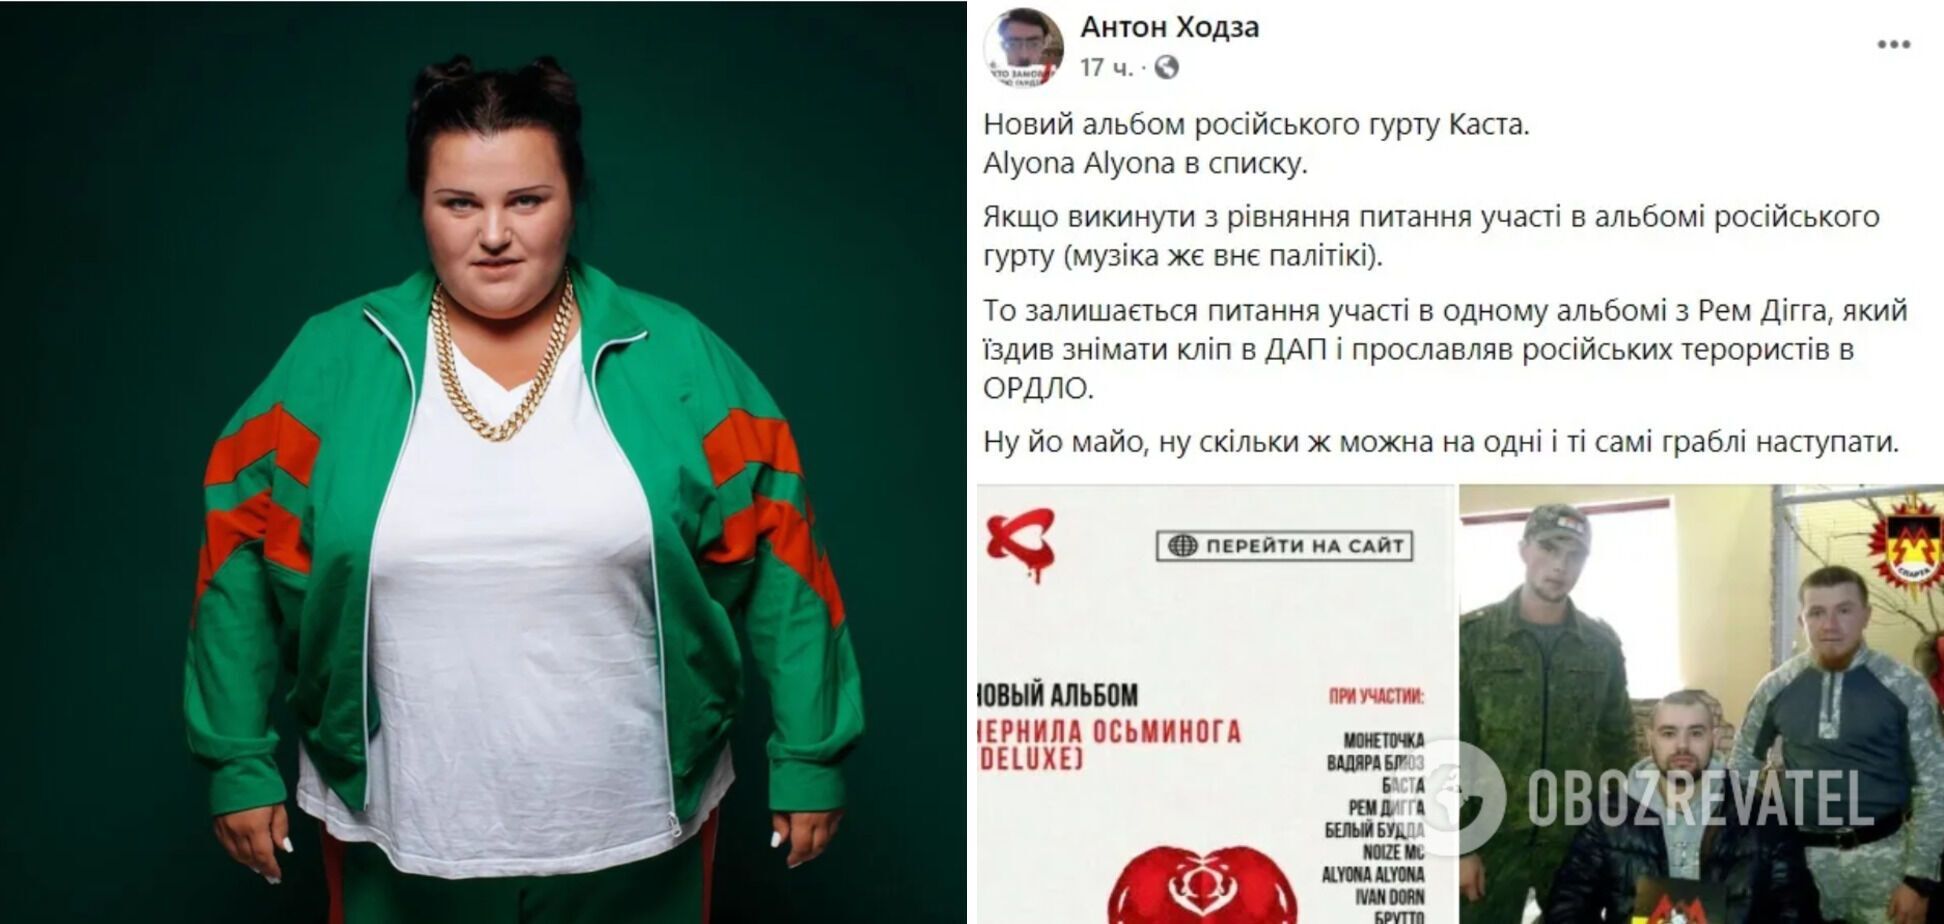 Alyona Alyona оскандалилася піснею "Врун-врун" з Іваном Дорном та російським гуртом "Каста"